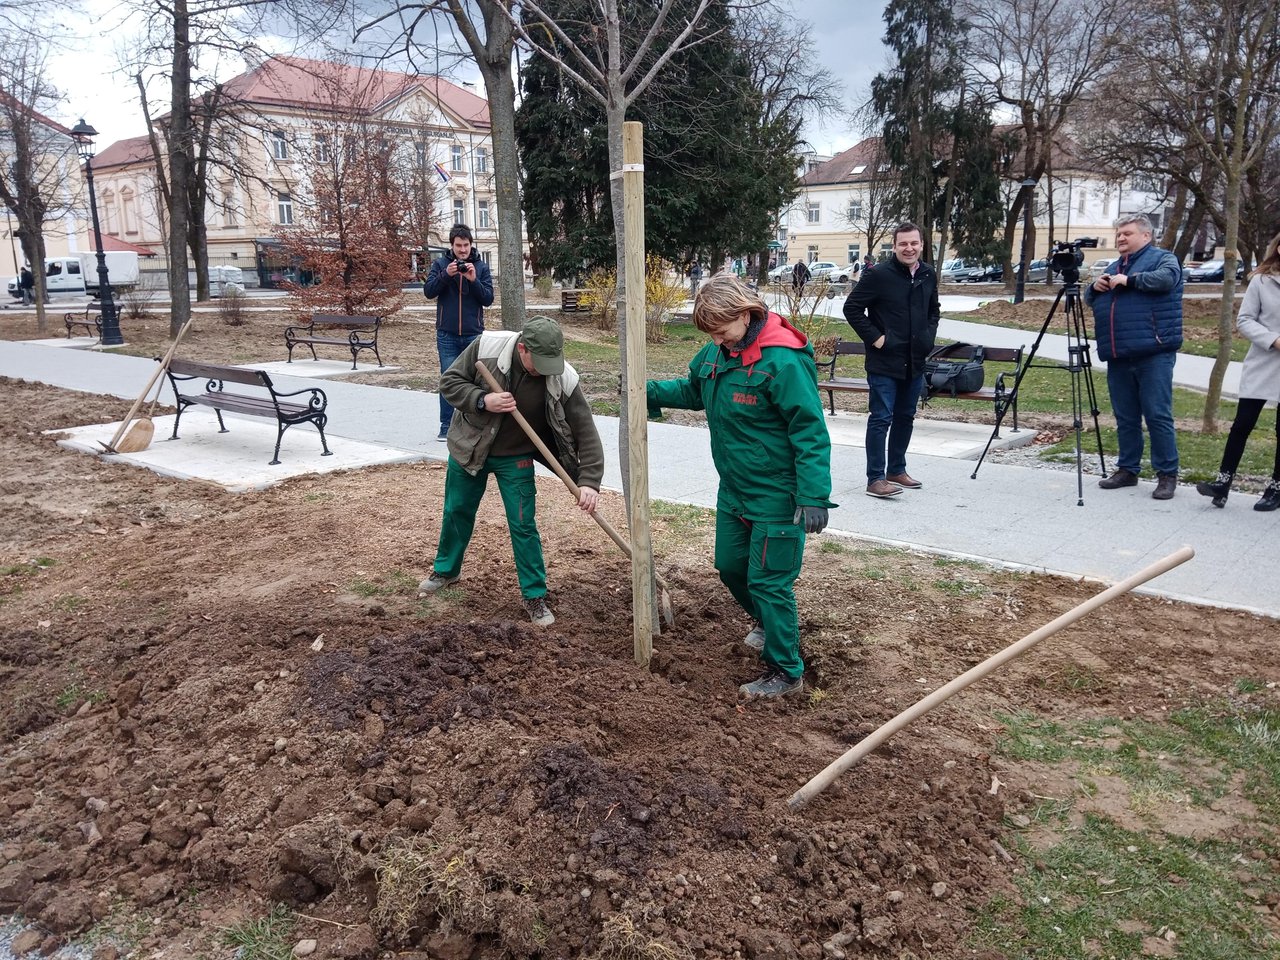 Fotografija: Odsad će se stabla na području Bjelovara saditi planski, a temelj tome je izrada strategije razvoje Zelene infrastukture/ Foto: Deni Marčinković
